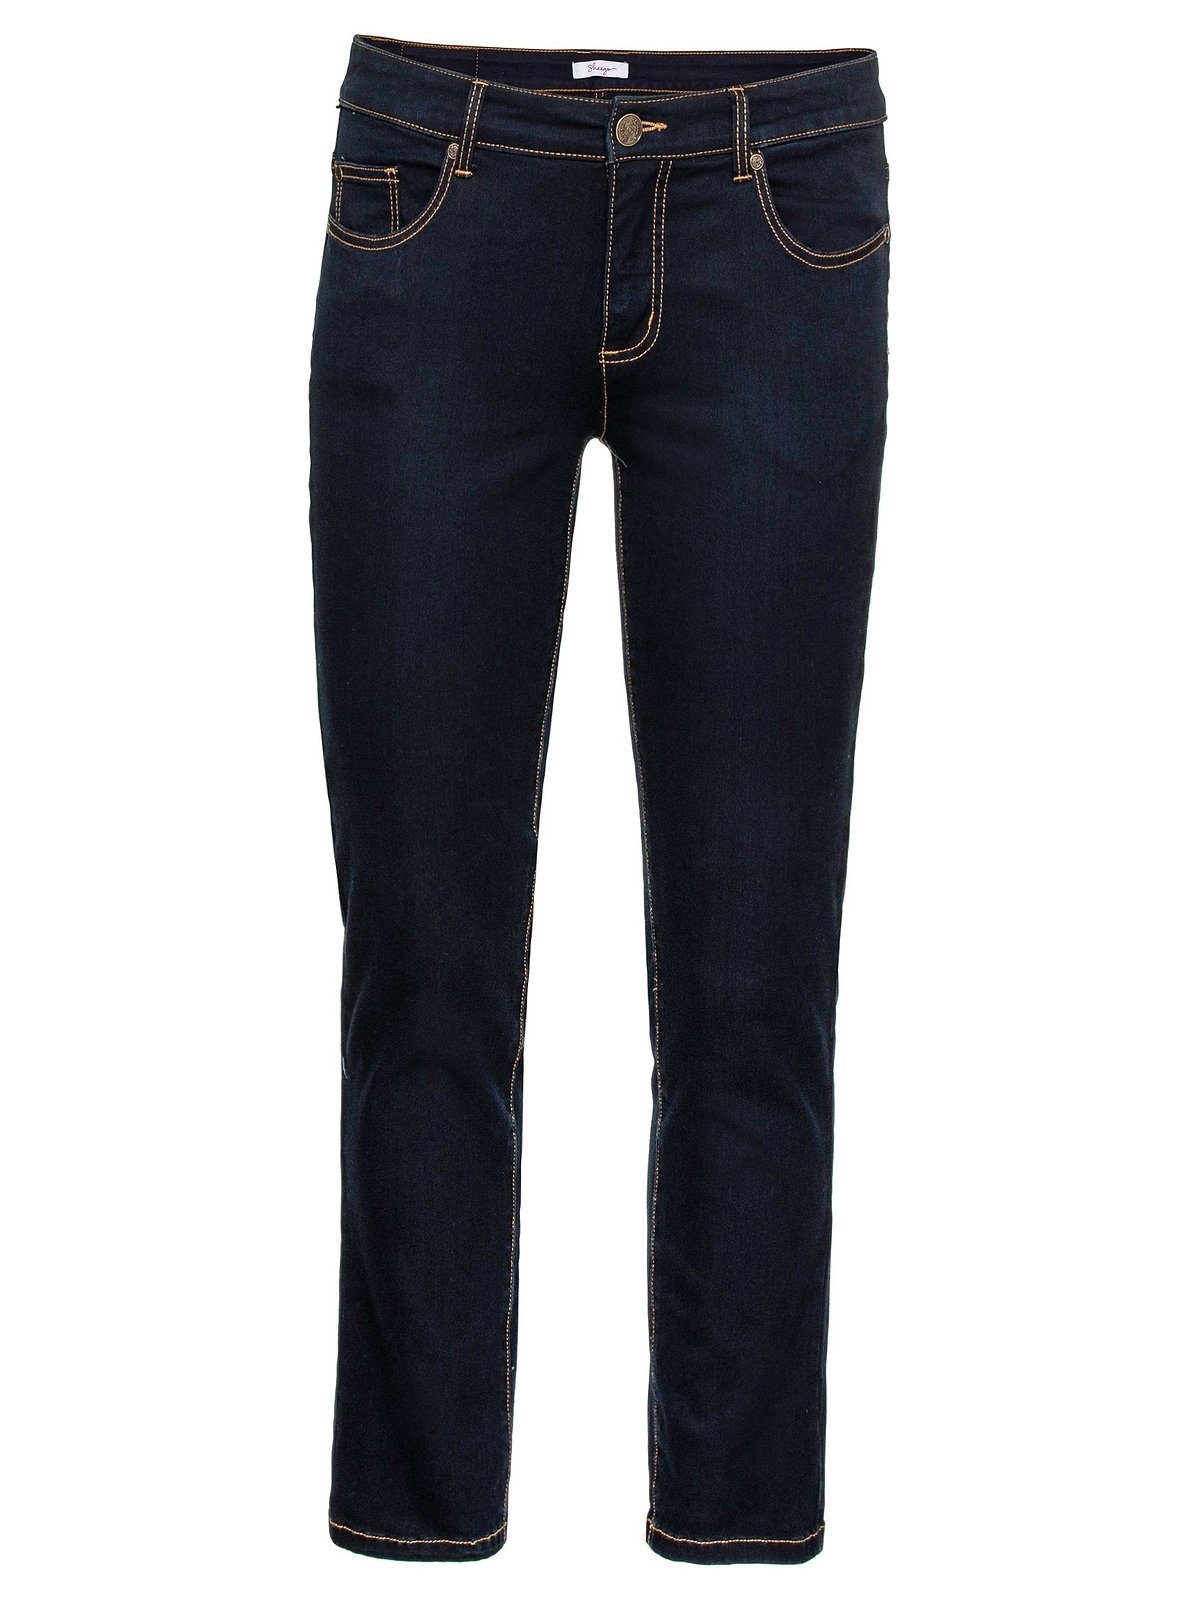 Sheego im Denim 5-Pocket-Stil Stretch-Jeans Große black Größen blue